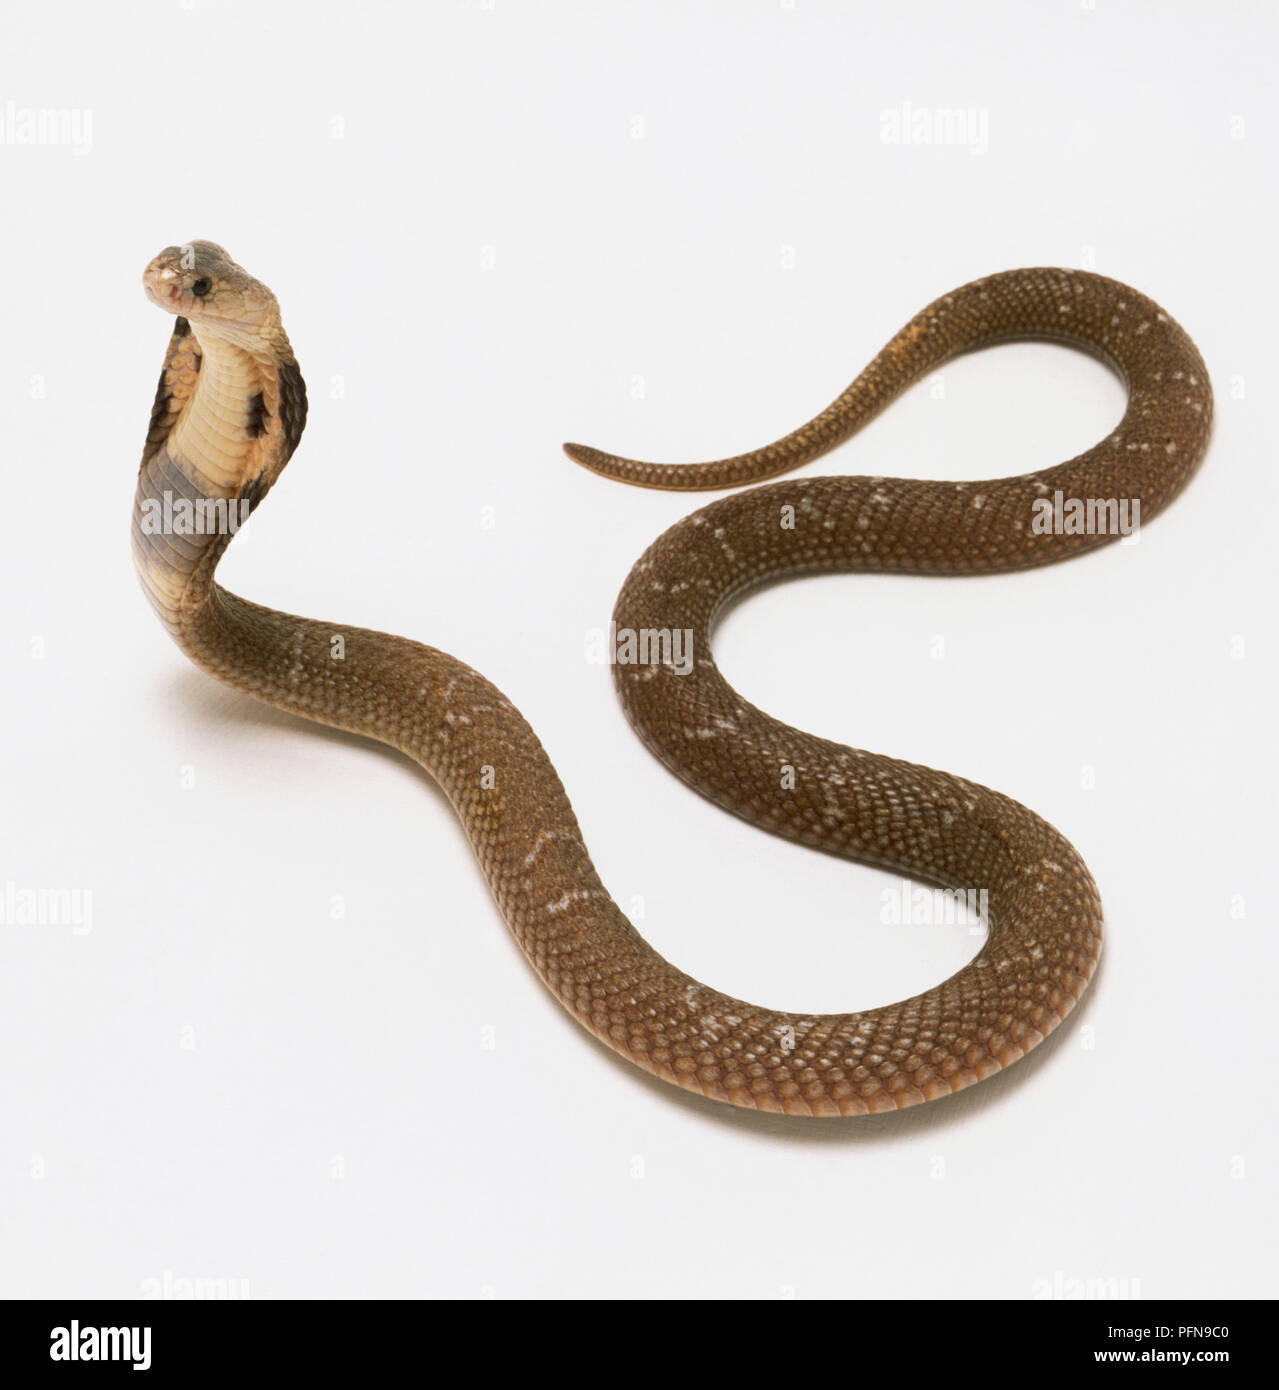 Monocled Cobra diffusione del cofano per rendere il capo più ampia. Il serpente è marrone chiaro con un pallido flecks sulle scale. Foto Stock